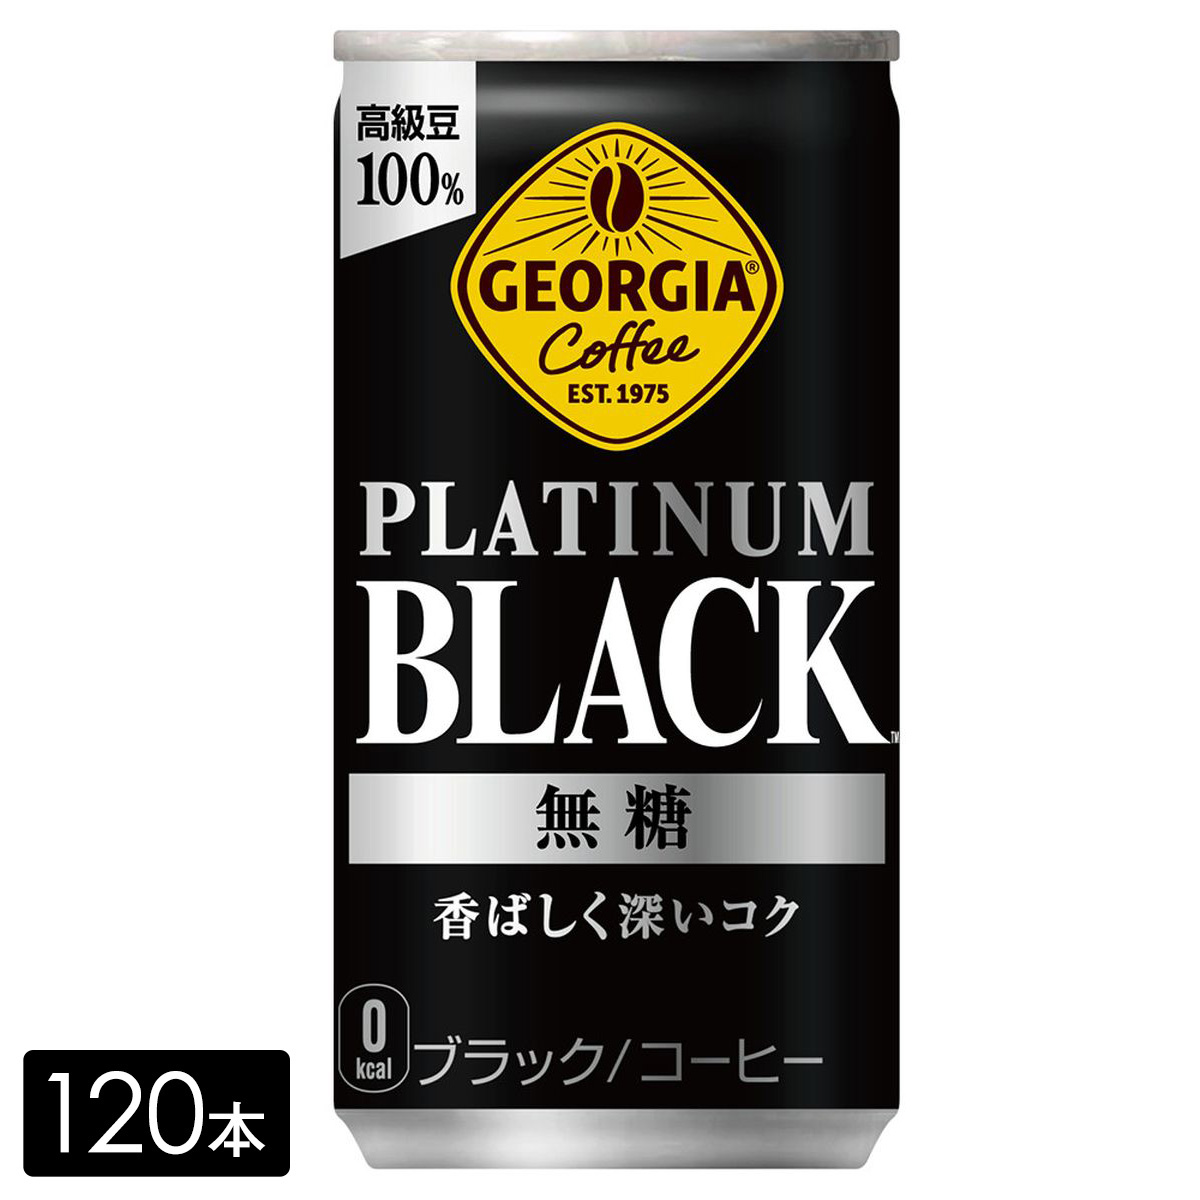 [送料無料]ジョージア プラチナムブラック 185g缶×120本(30本×4箱) 缶コーヒー PLATINUM BLACK ケース売り まとめ買い